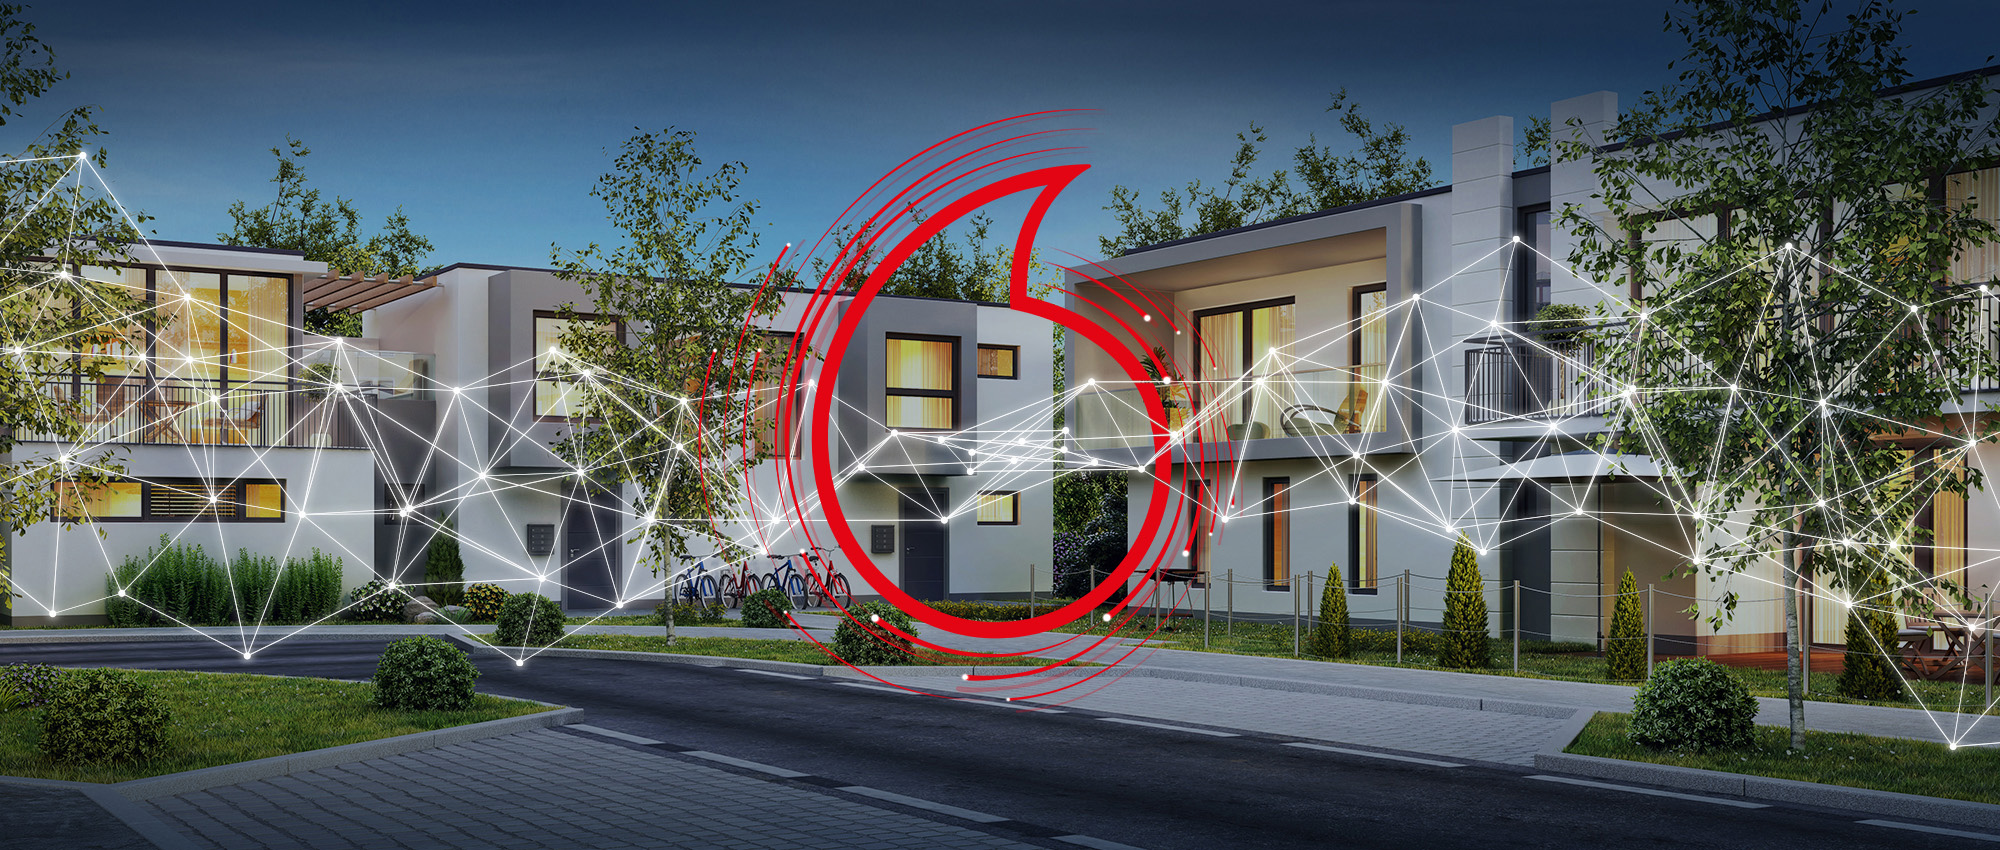 Gebäudekonnektivität 4.0 â€“ ganzheitlich vernetzen und digitalisieren